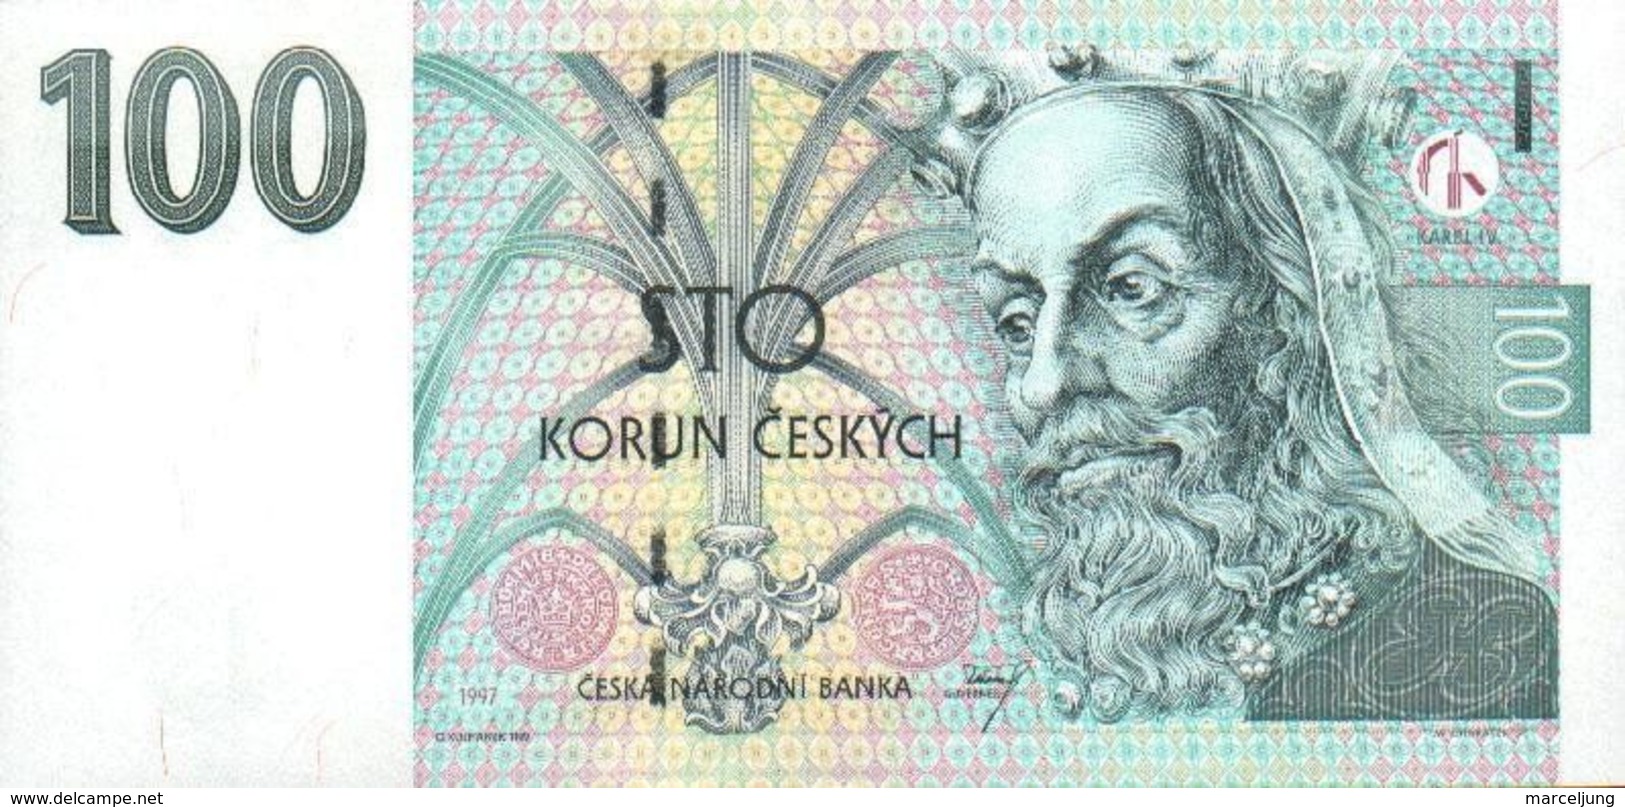 100 Korun Czech Republic UNC 1997 - Repubblica Ceca